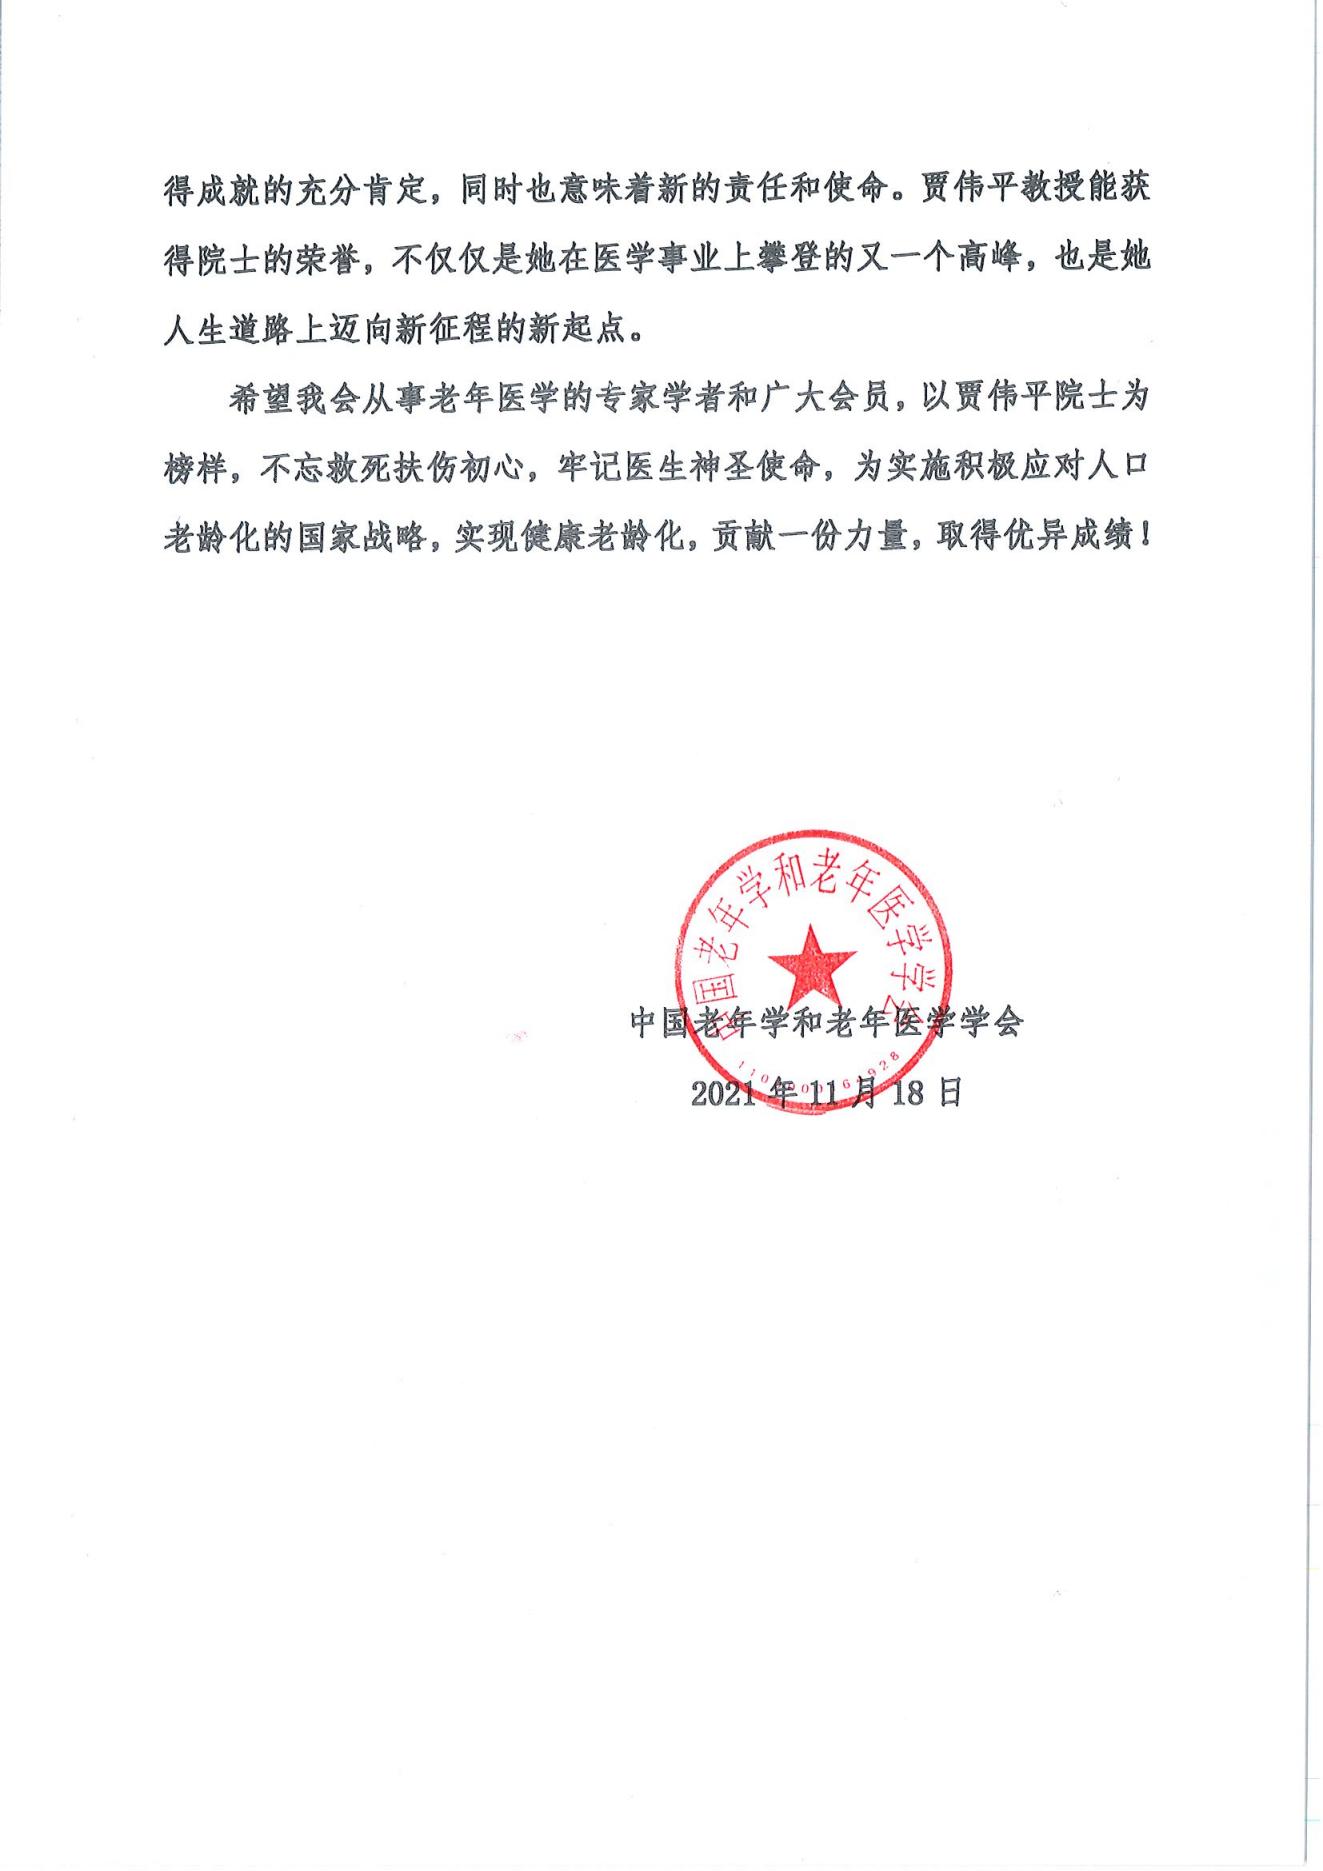 祝贺我会“基层慢病防治管理分会”主任委员贾伟平教授增选为2021年中国工程院院士_01.jpg